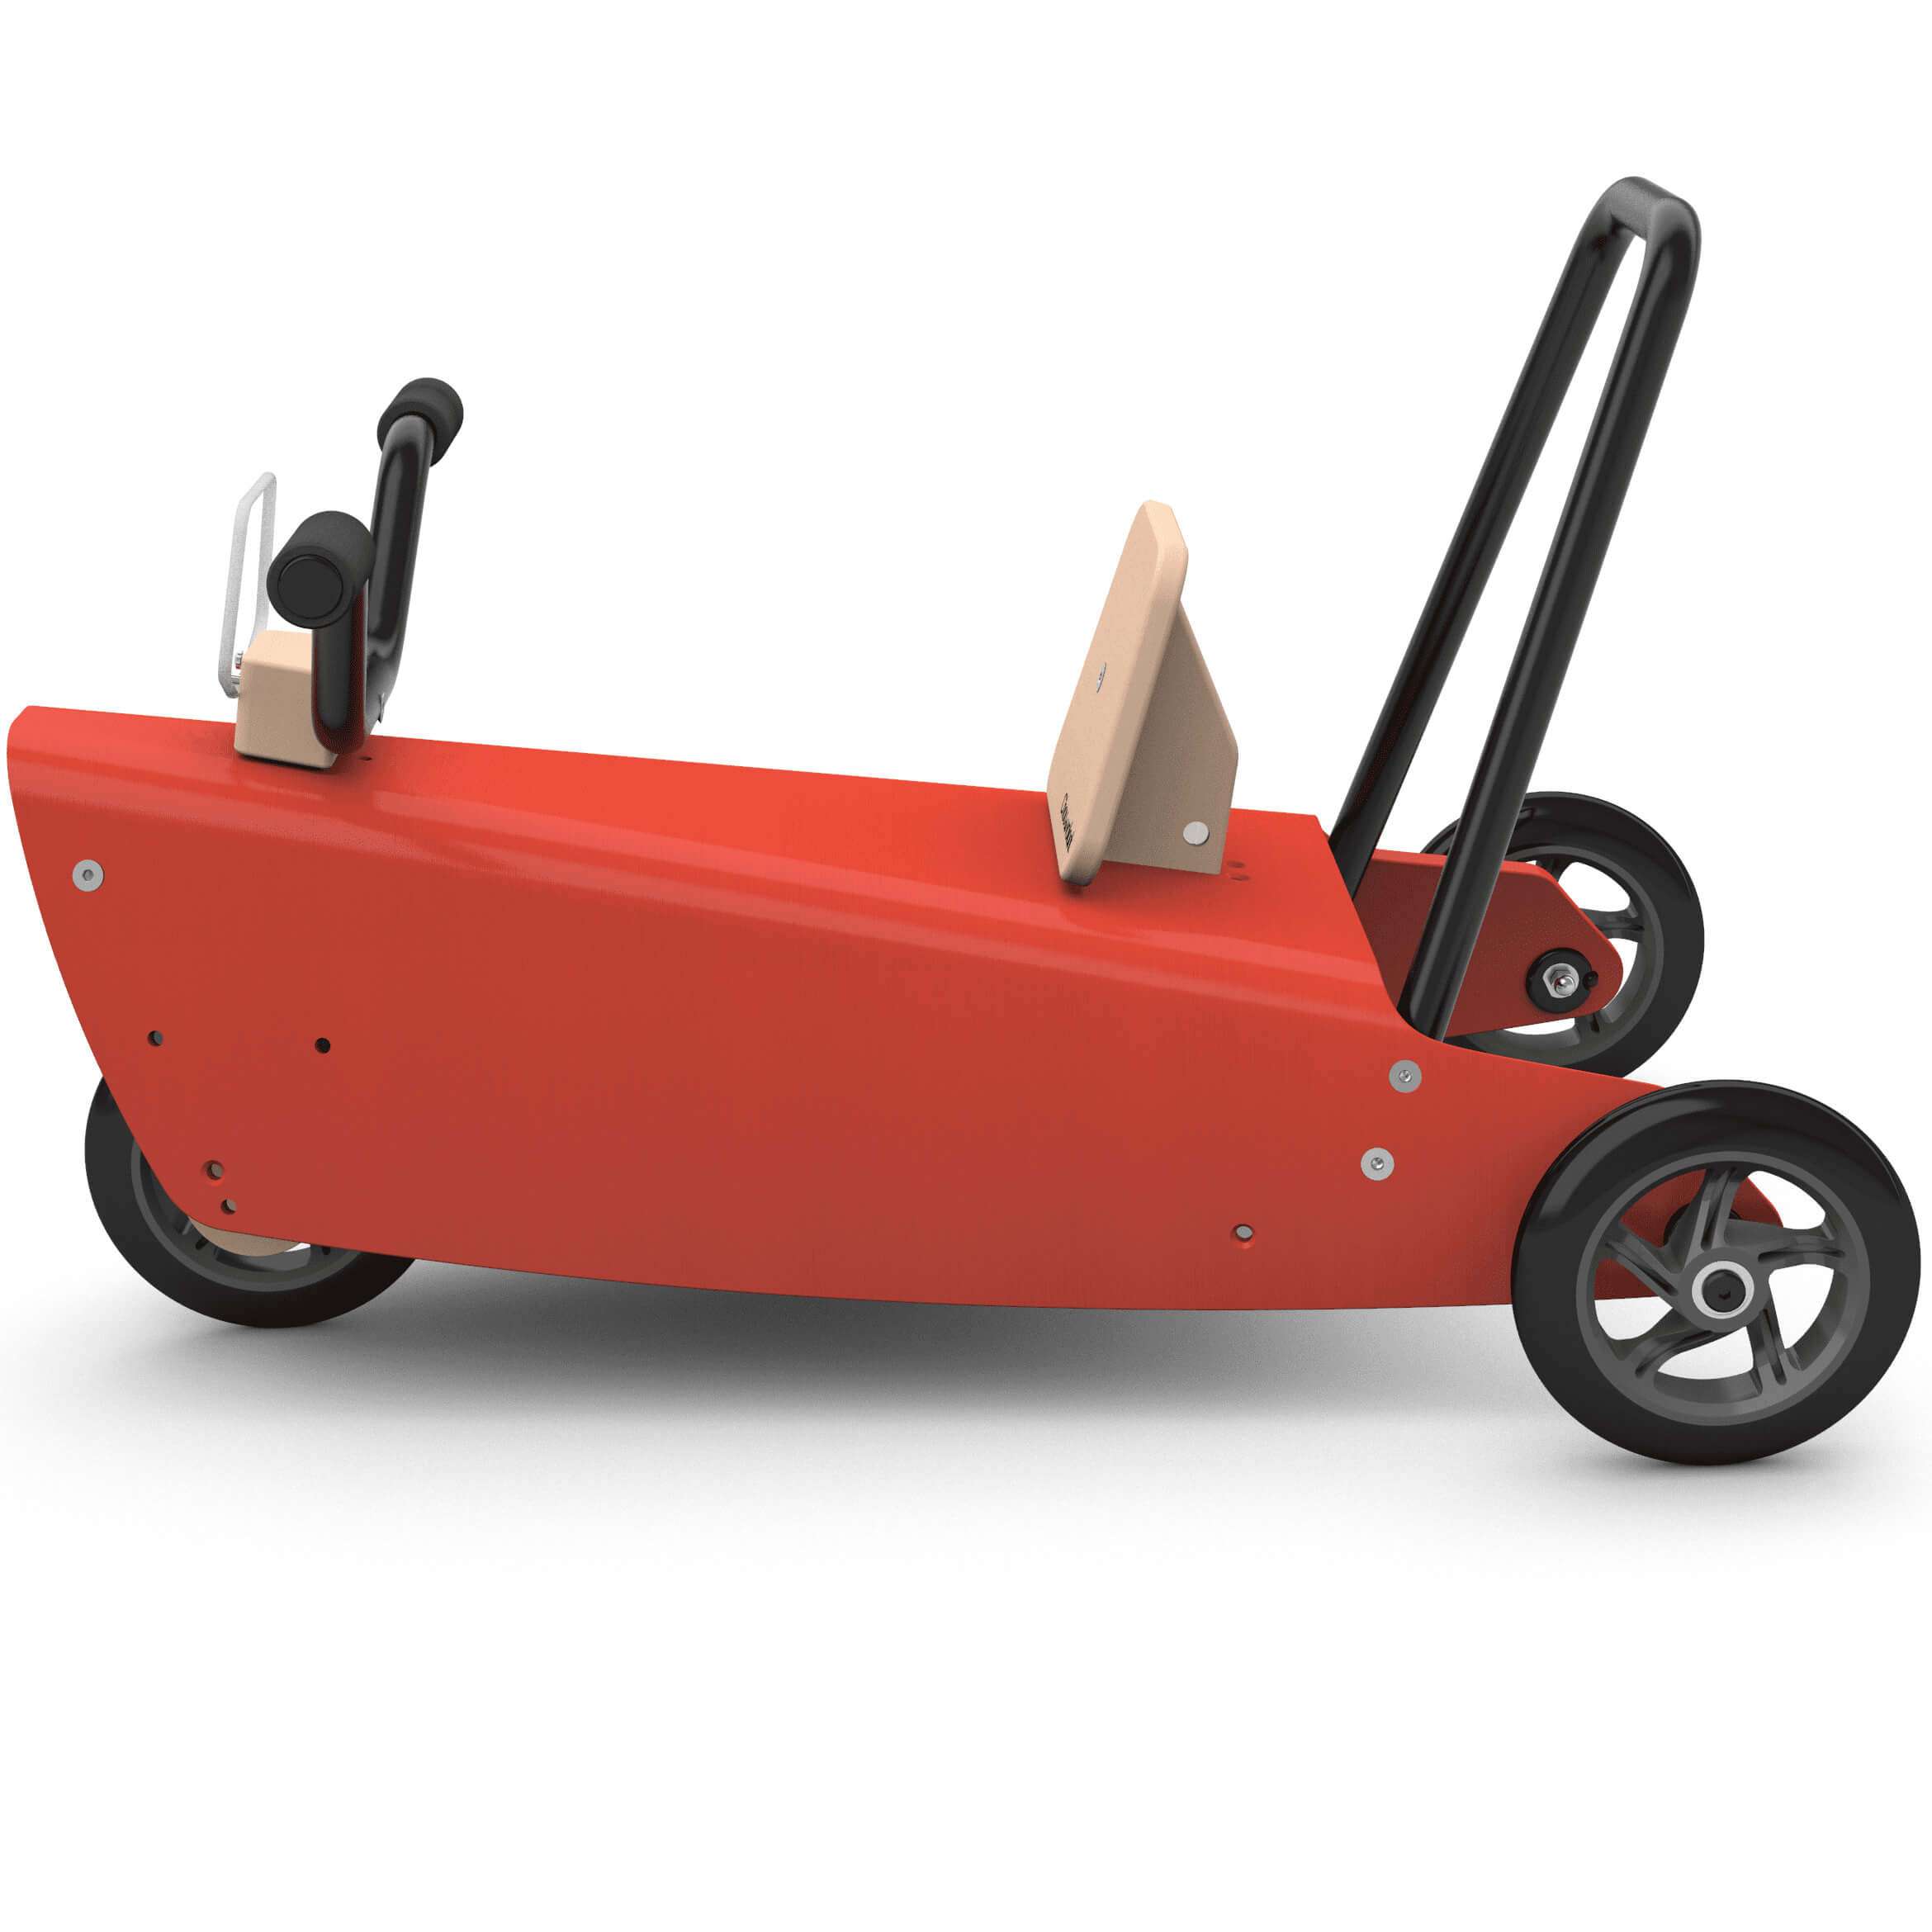 Porteur moto en bois design made in france rouge 6